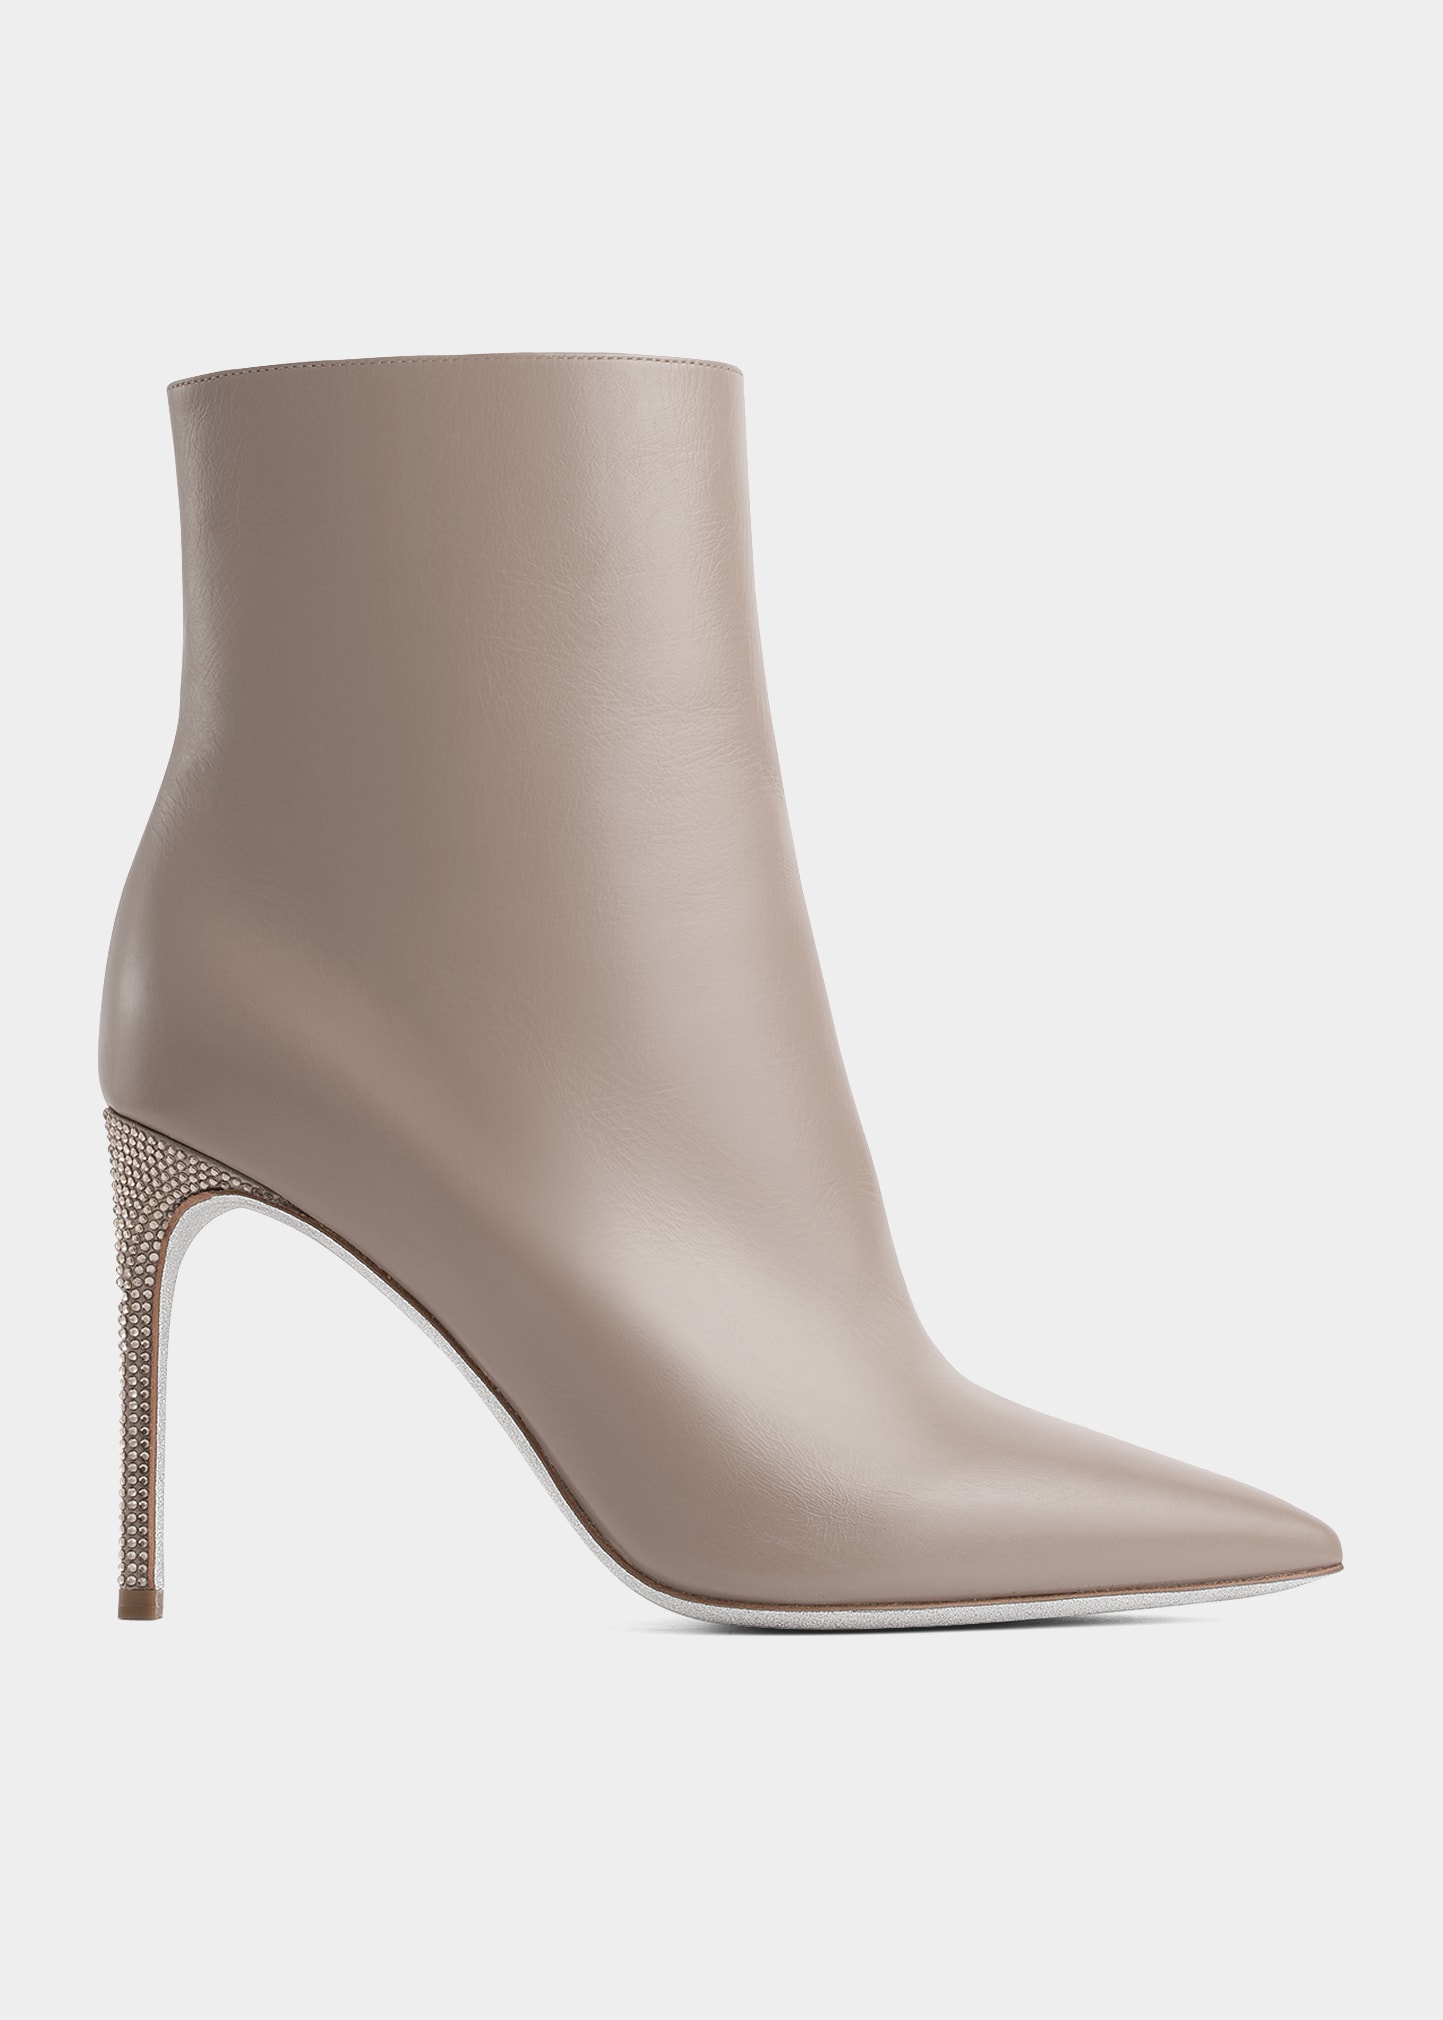 RENÉ CAOVILLA Boots for Women | ModeSens